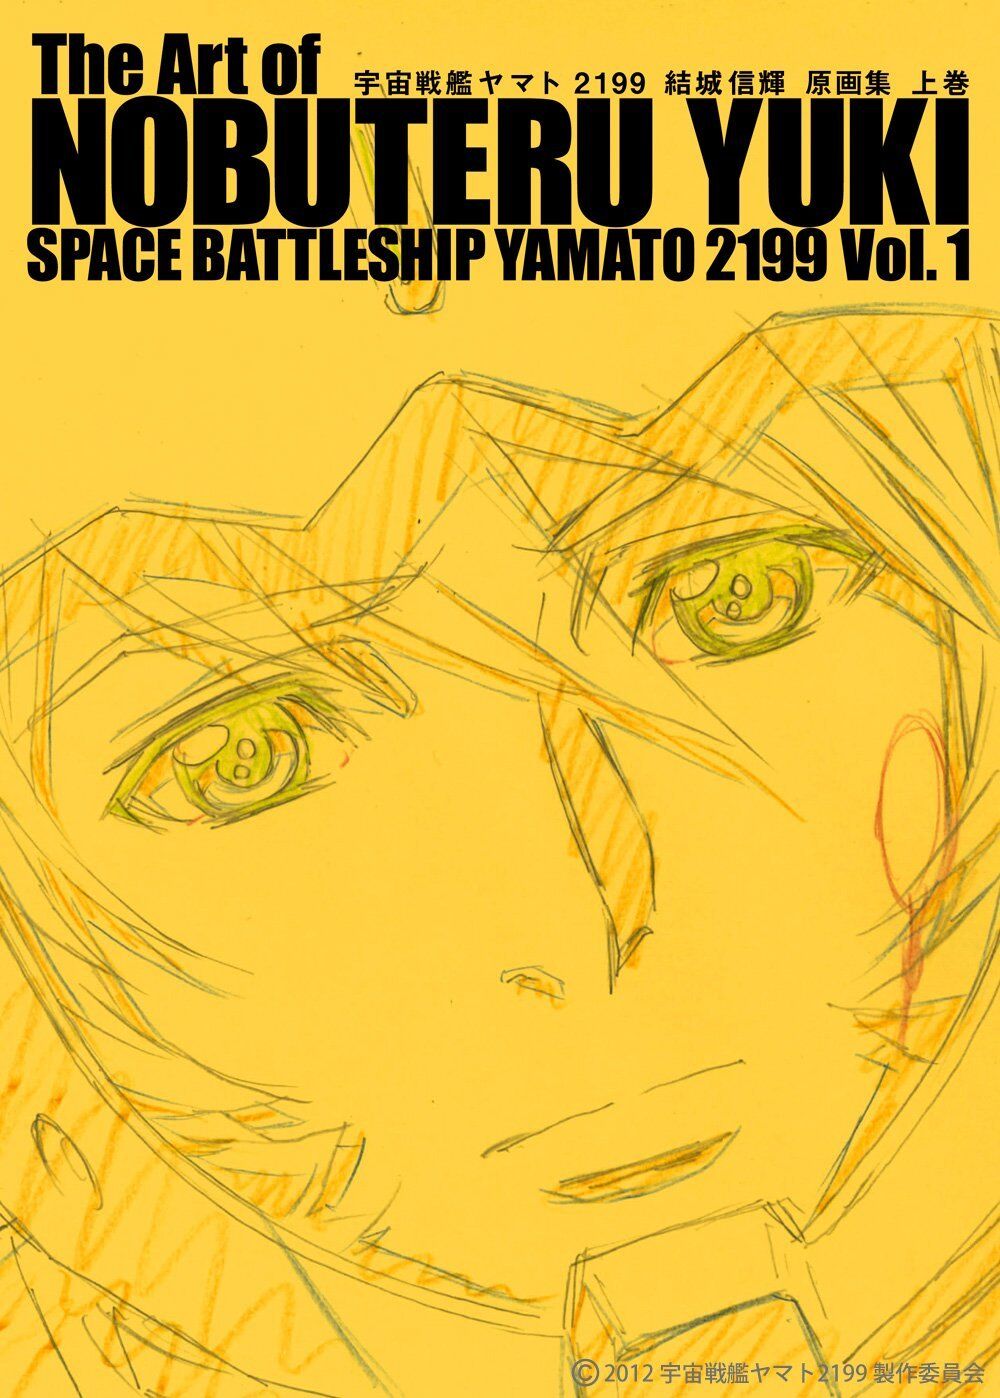 NOBUTERU YUKI YAMATO 2199 Material Art Book 2 SET total 894page!! SaceBattleship 